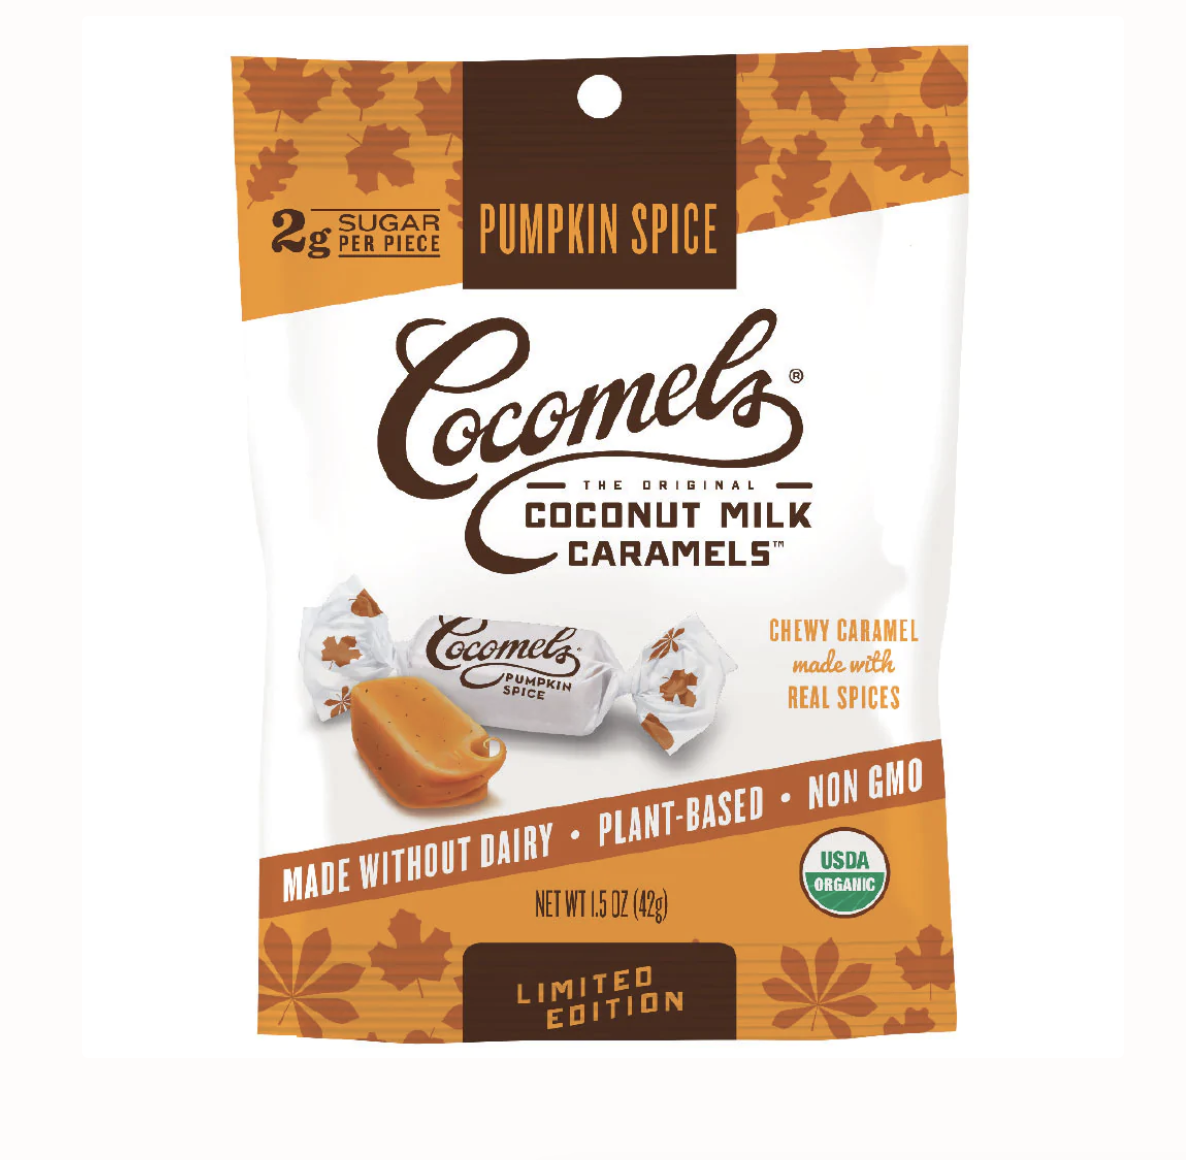 Cocomels’ Pumpkin Spice Caramels